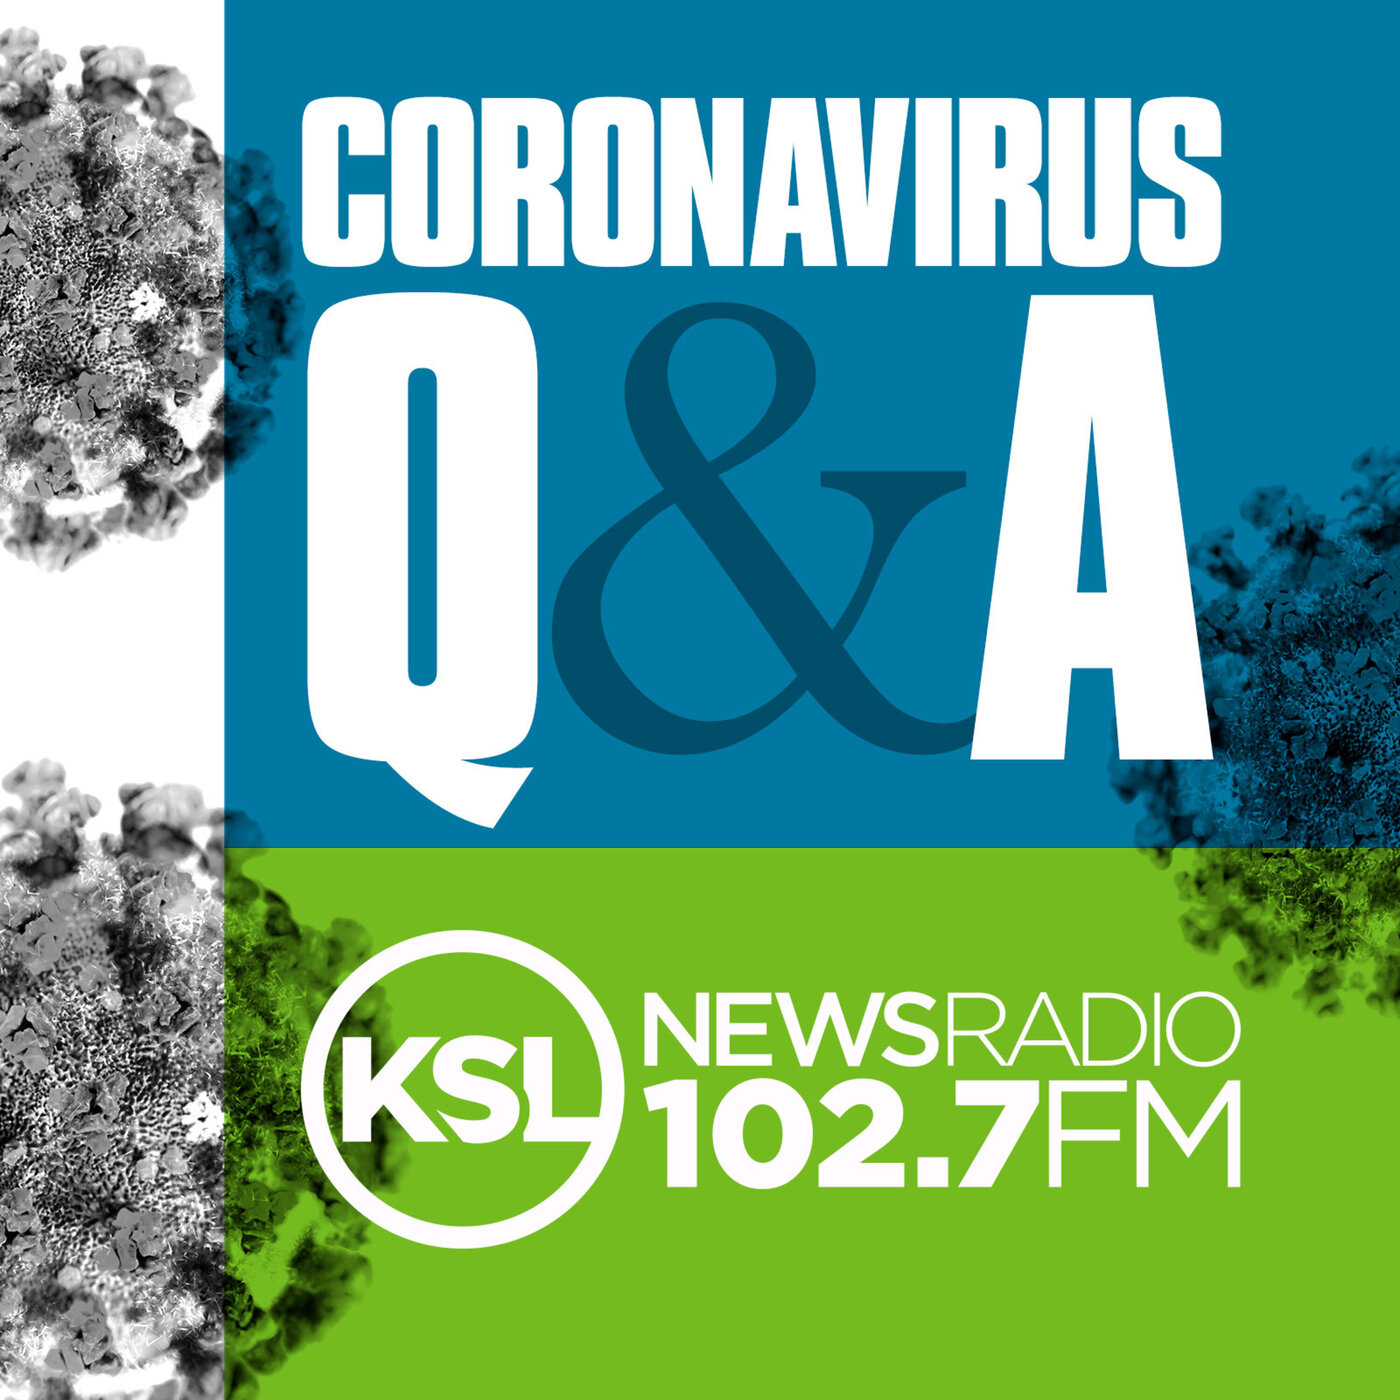 Coronavirus Update December 2nd